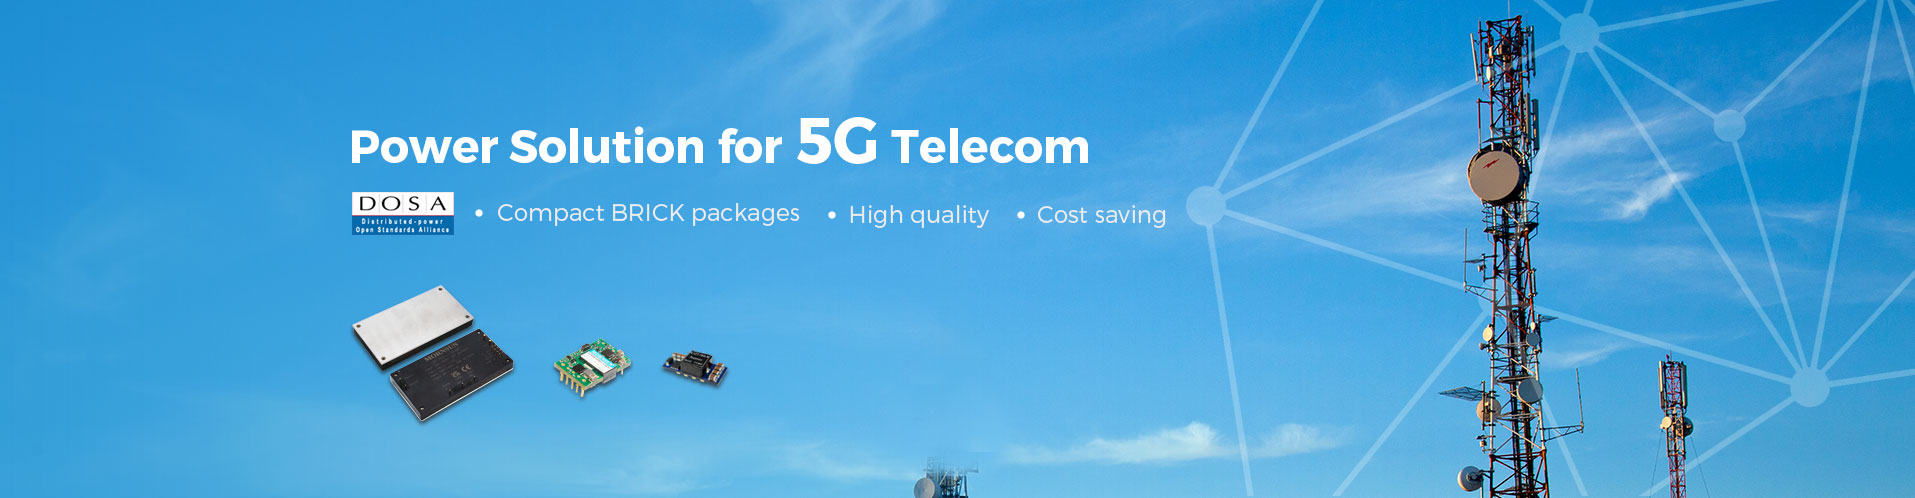 Power Solution For 5G Telecom